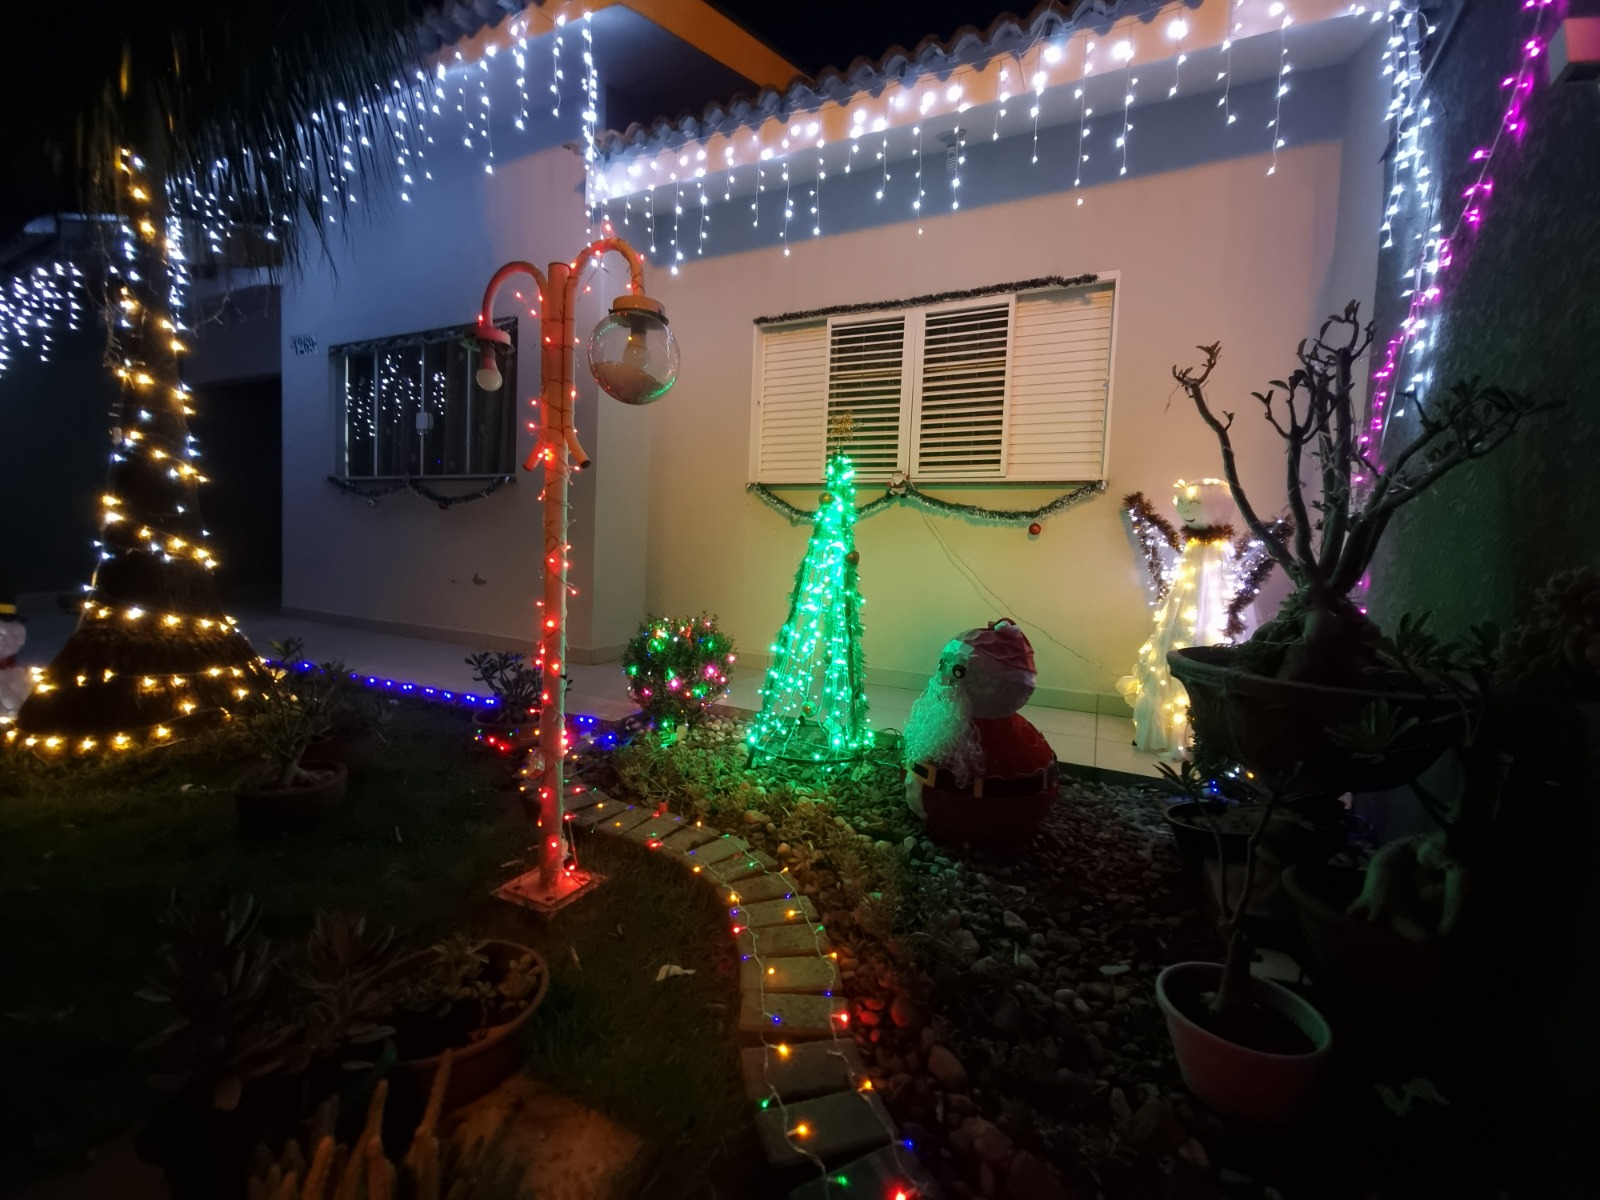 Prefeitura de Sarandi divulga resultado de concurso de decoração natalina em residências e comércios